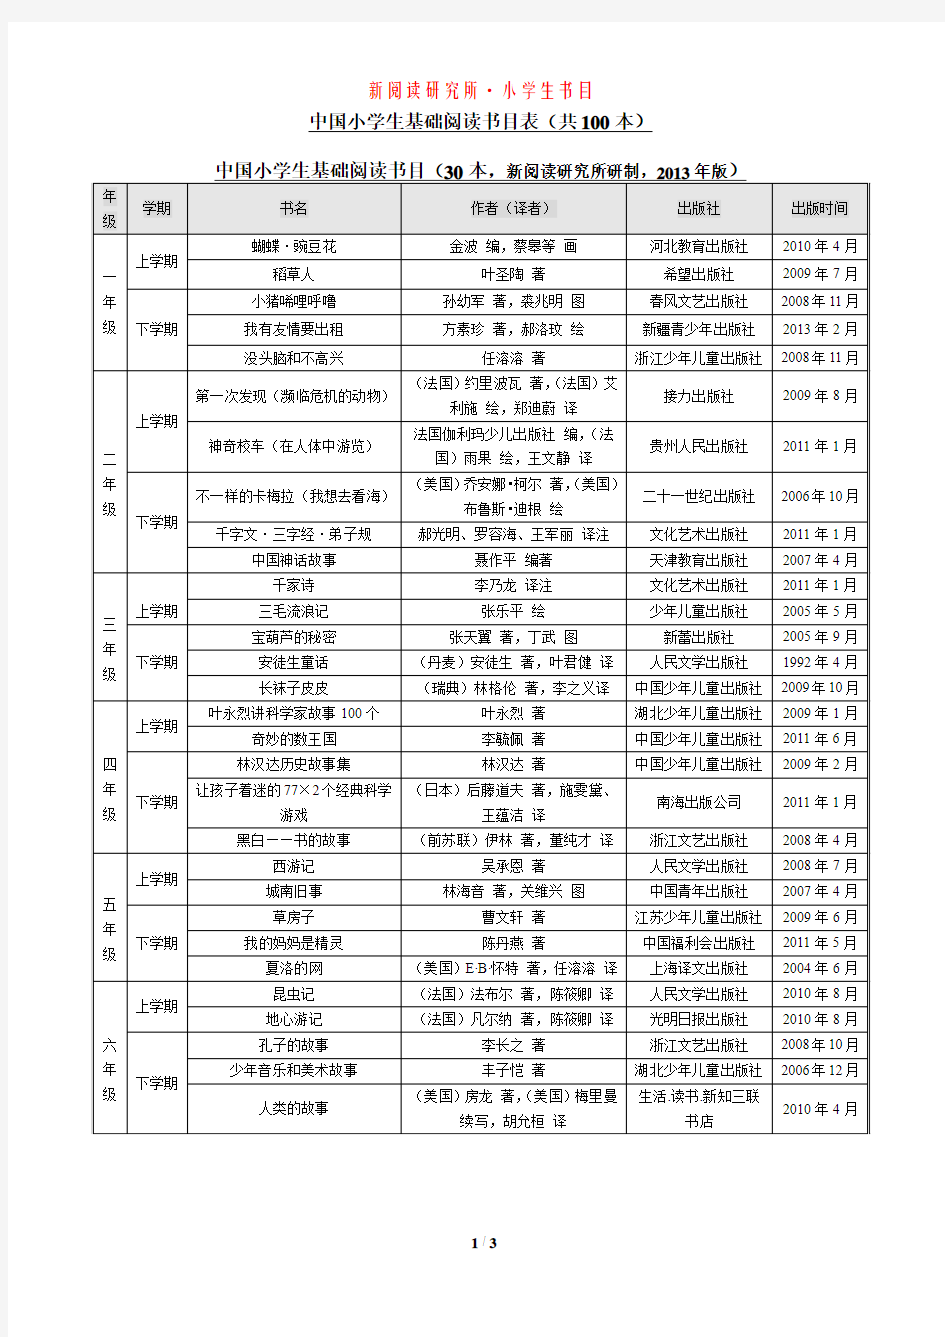 《中国小学生基础阅读书目表》_修订版(2014年) - 小学分年级整理好